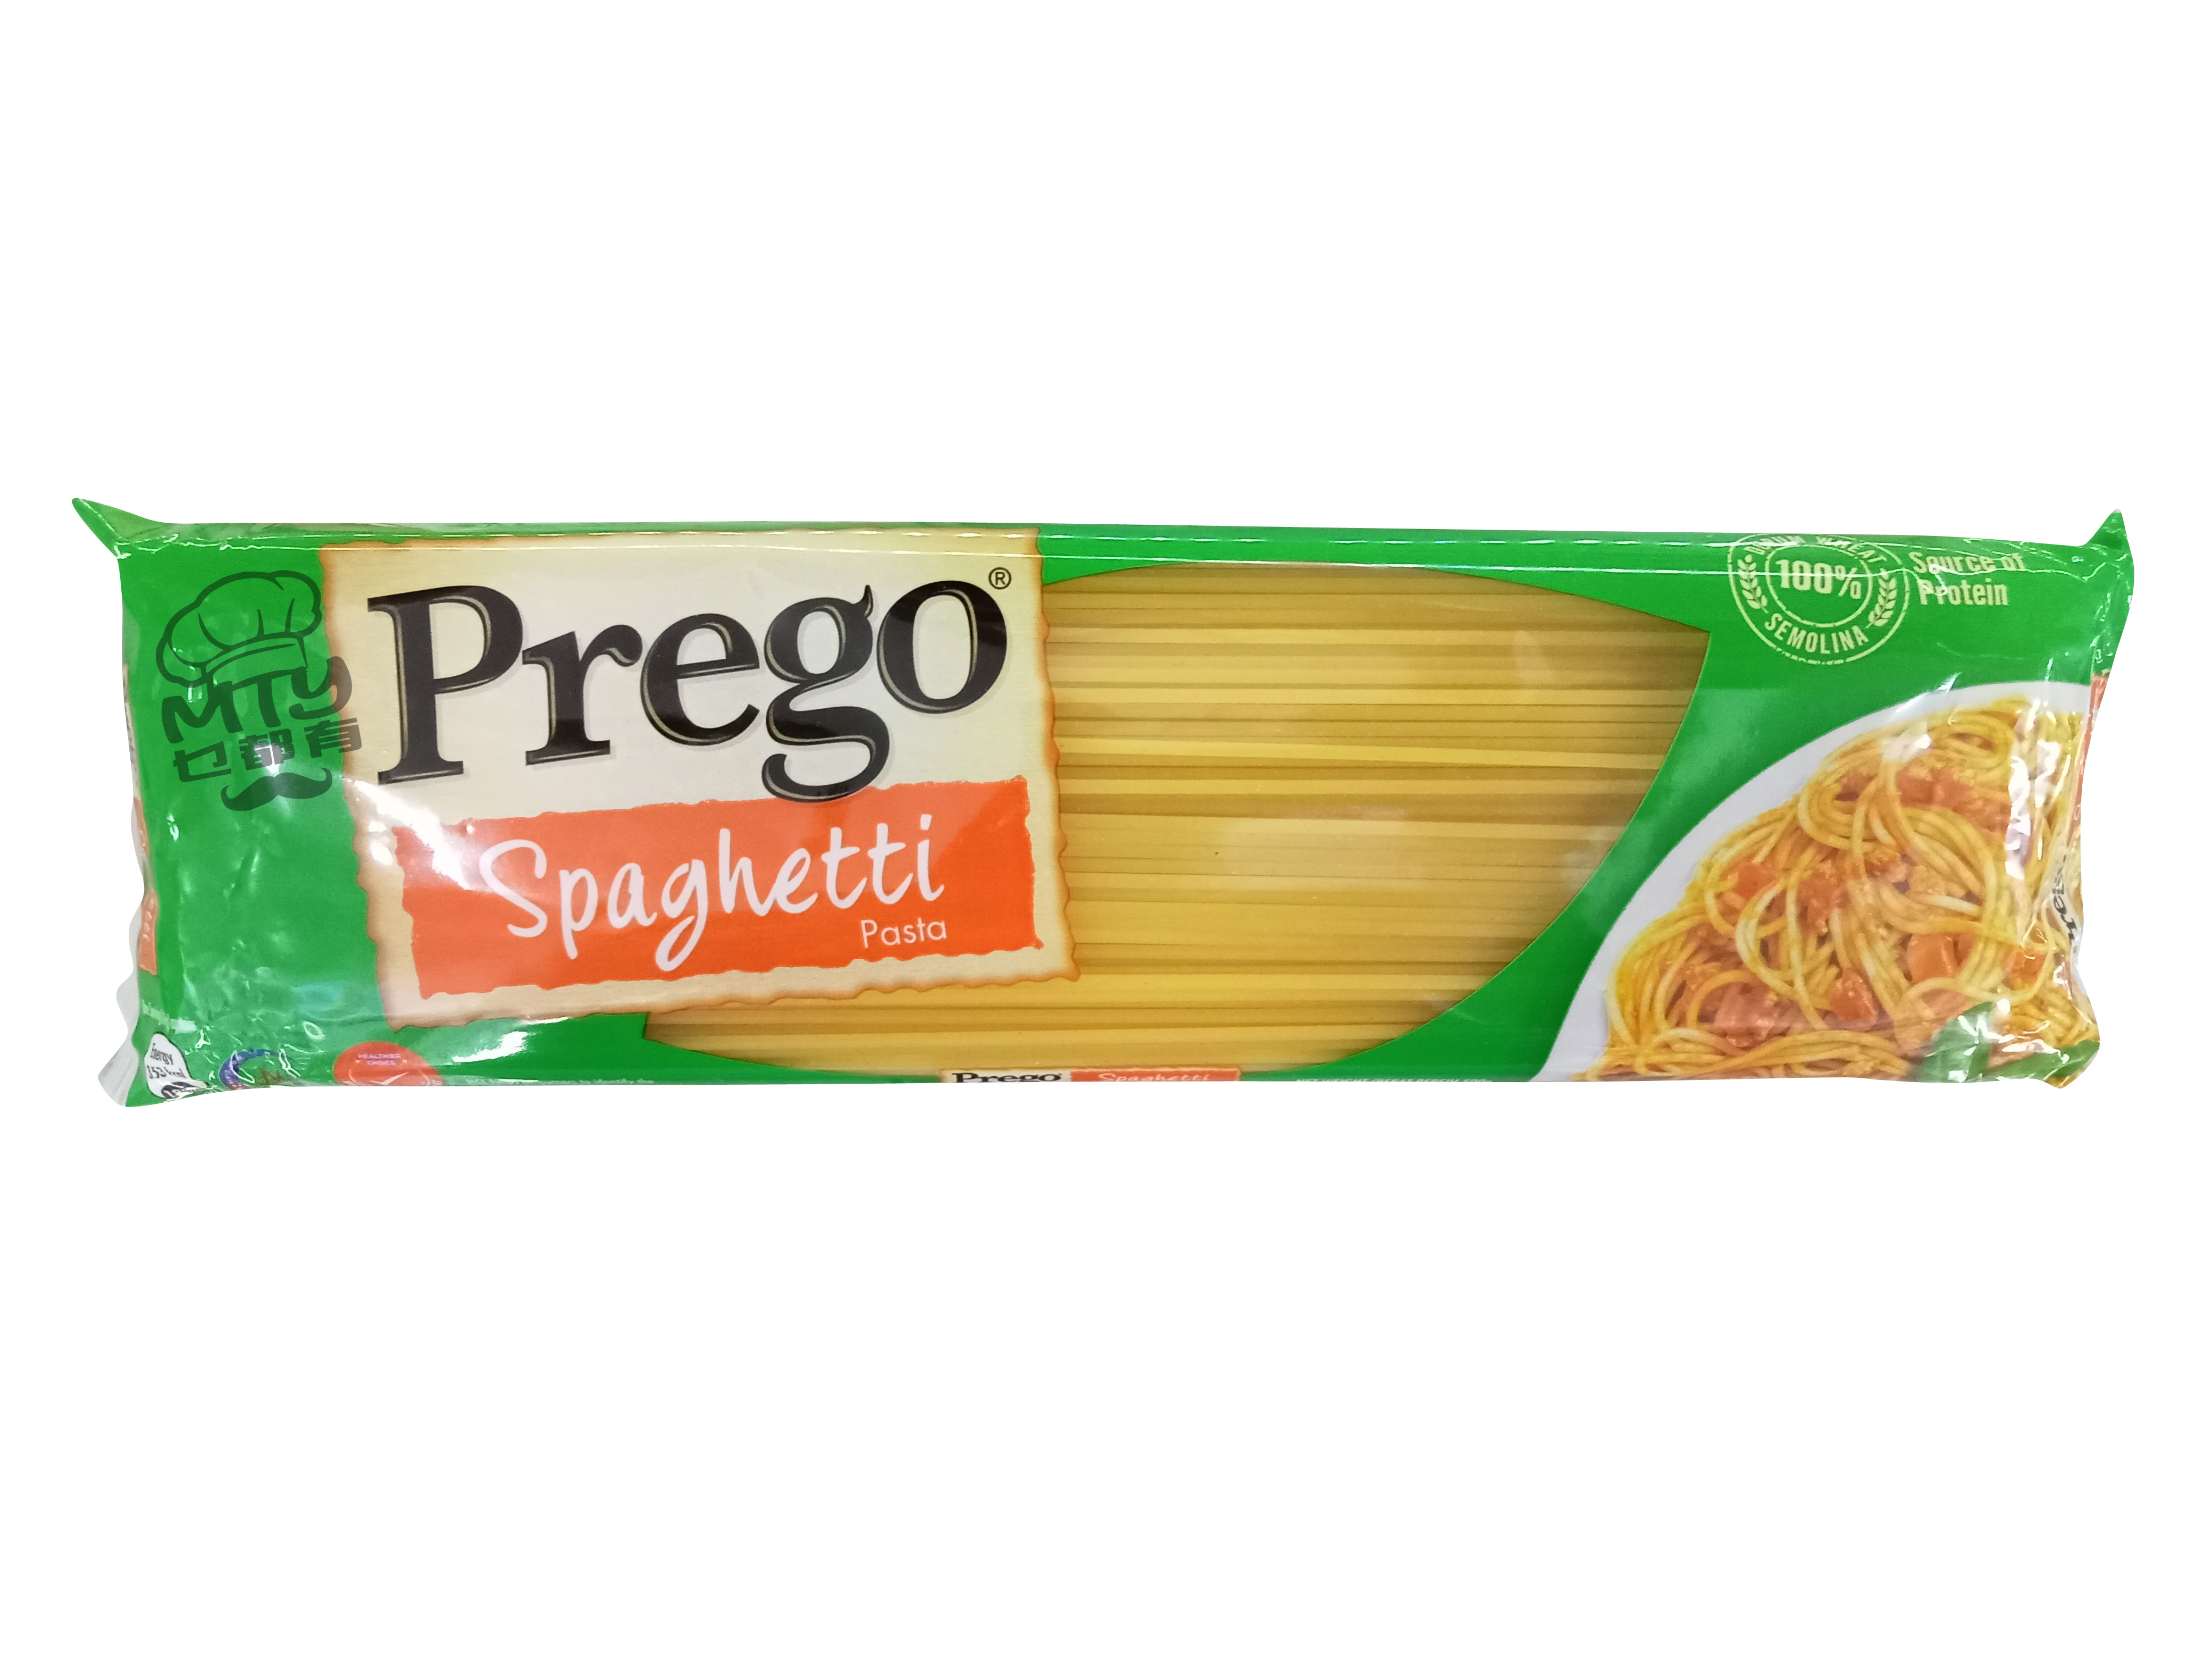 Pergo Spaghetti 500g